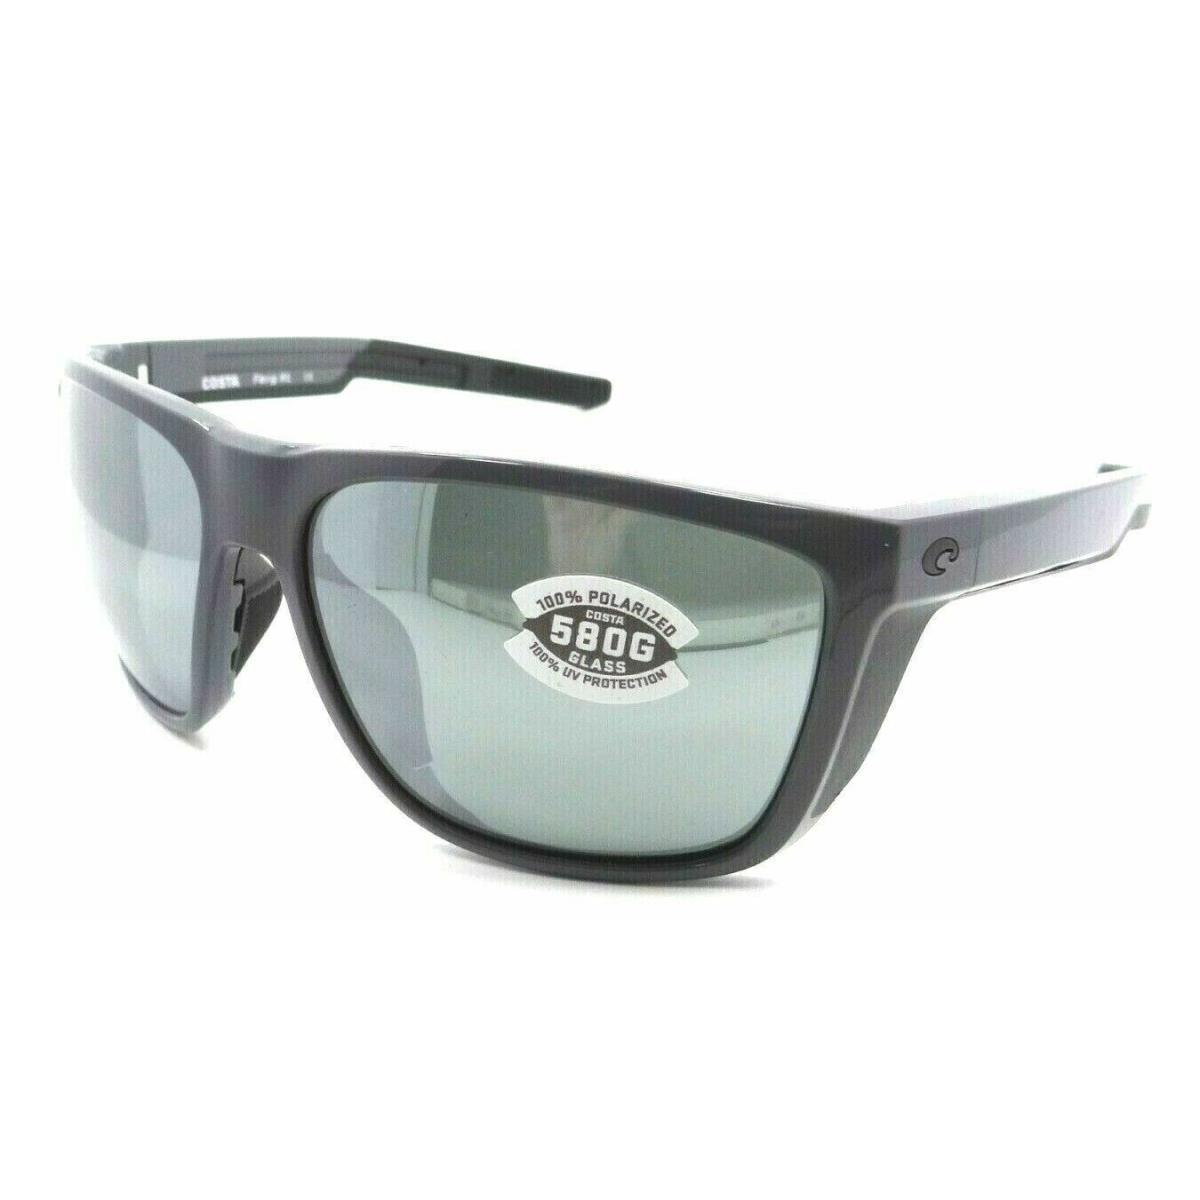 Costa Del Mar 06S9012 Ferg XL Sunglasses Shiny Gray Silver Mirror 580G Polarized - Multicolor Frame